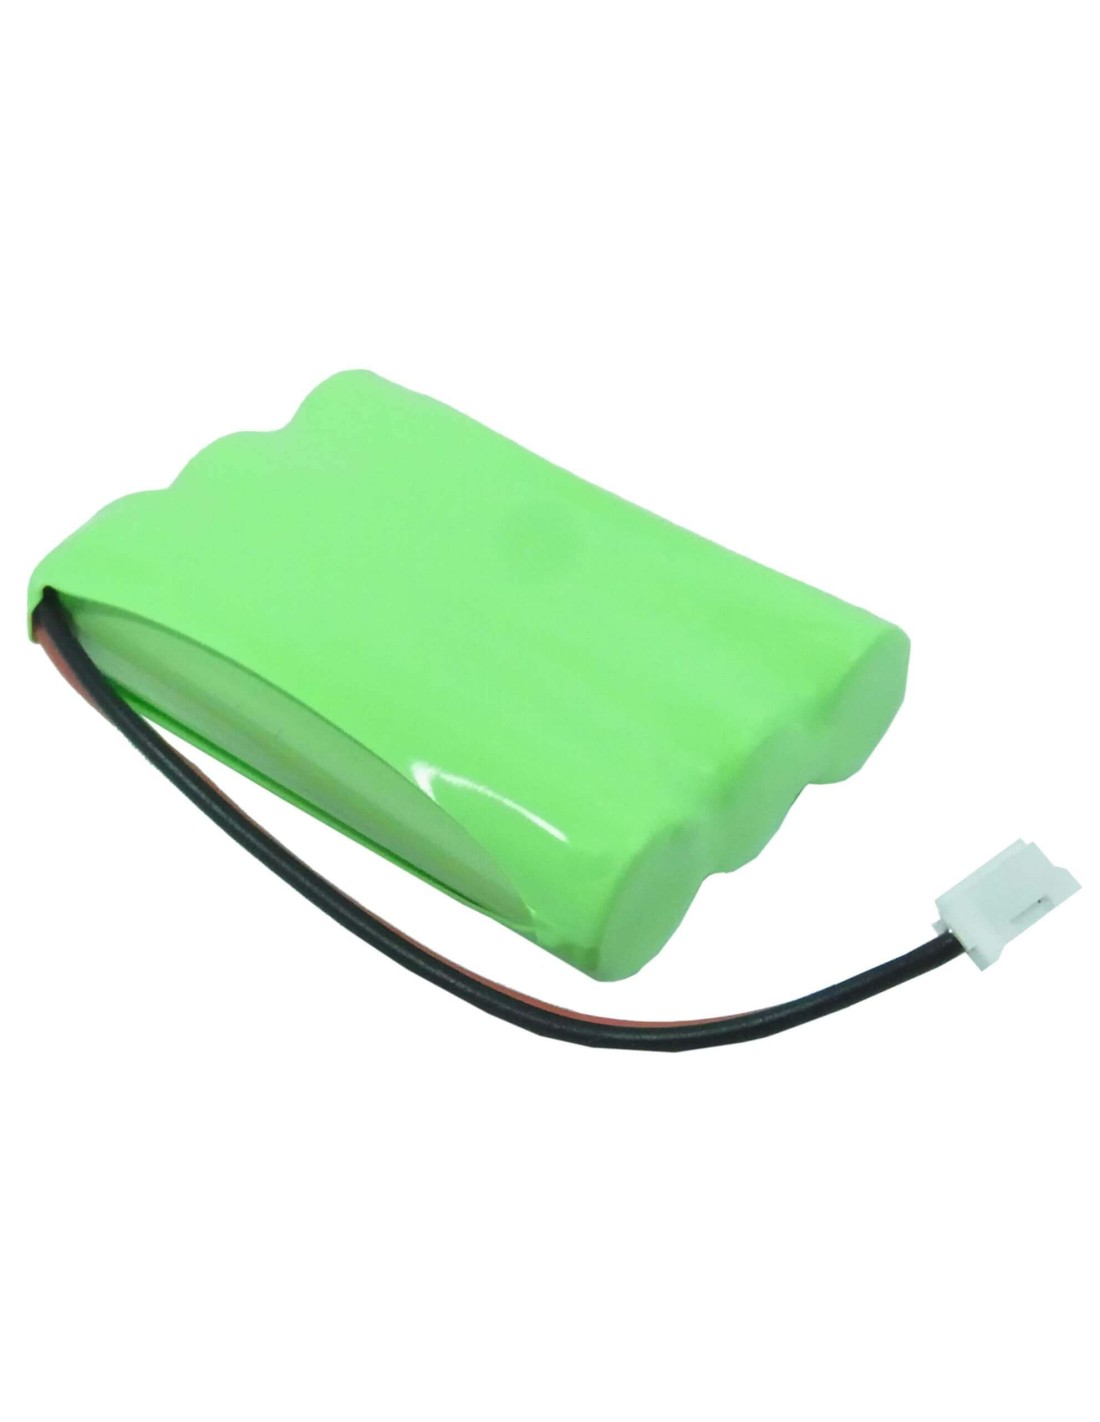 Battery for Teletalk, 7105a 3.6V, 600mAh - 2.16Wh